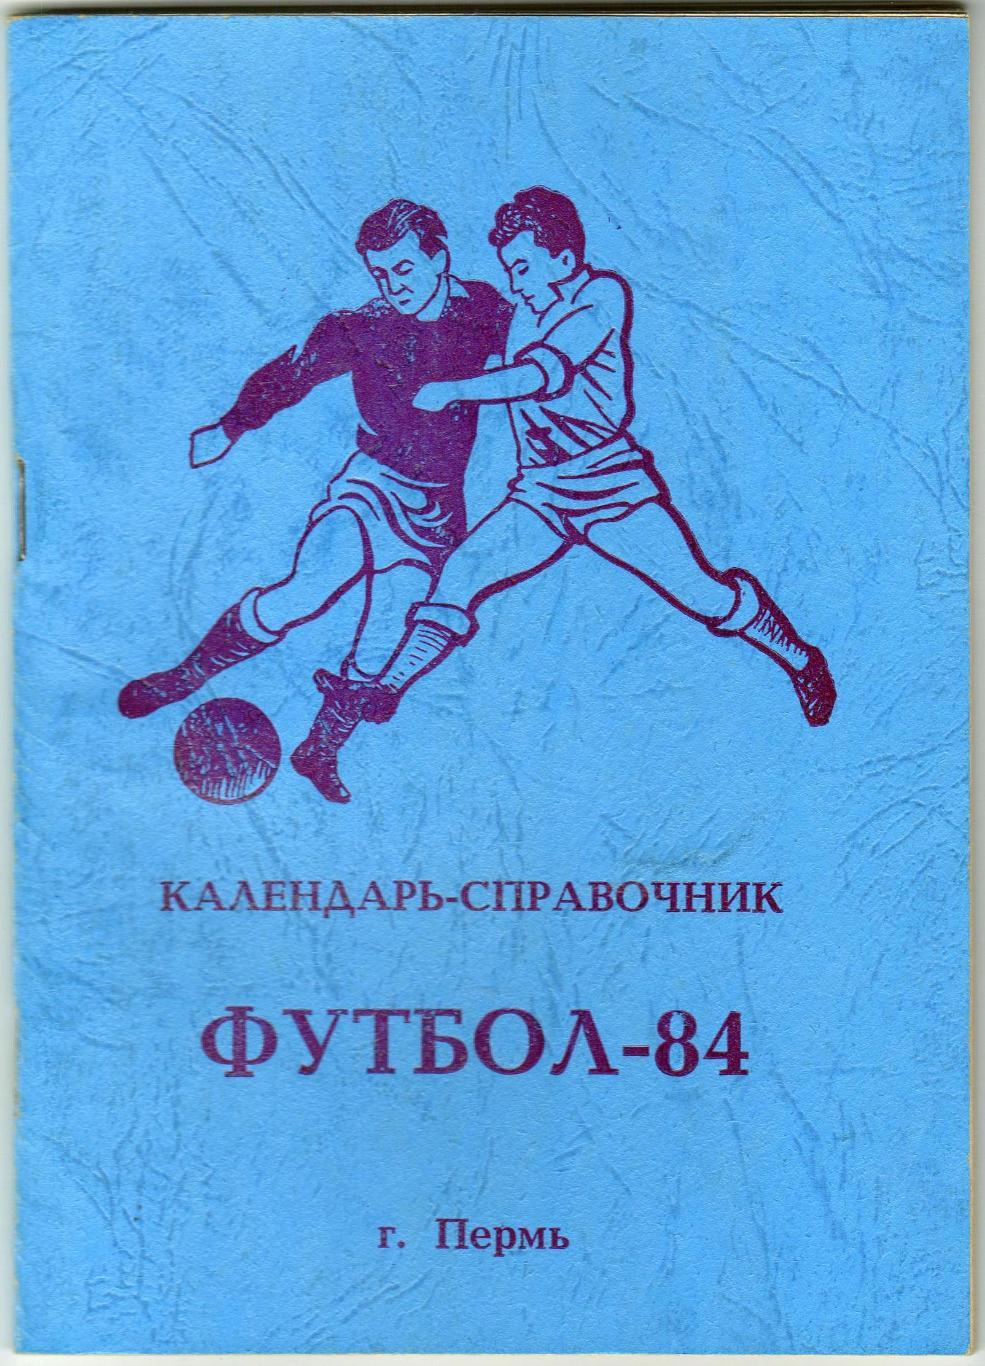 Футбол 1984 Пермь Звезда в чемпионатах СССР/РСФСР